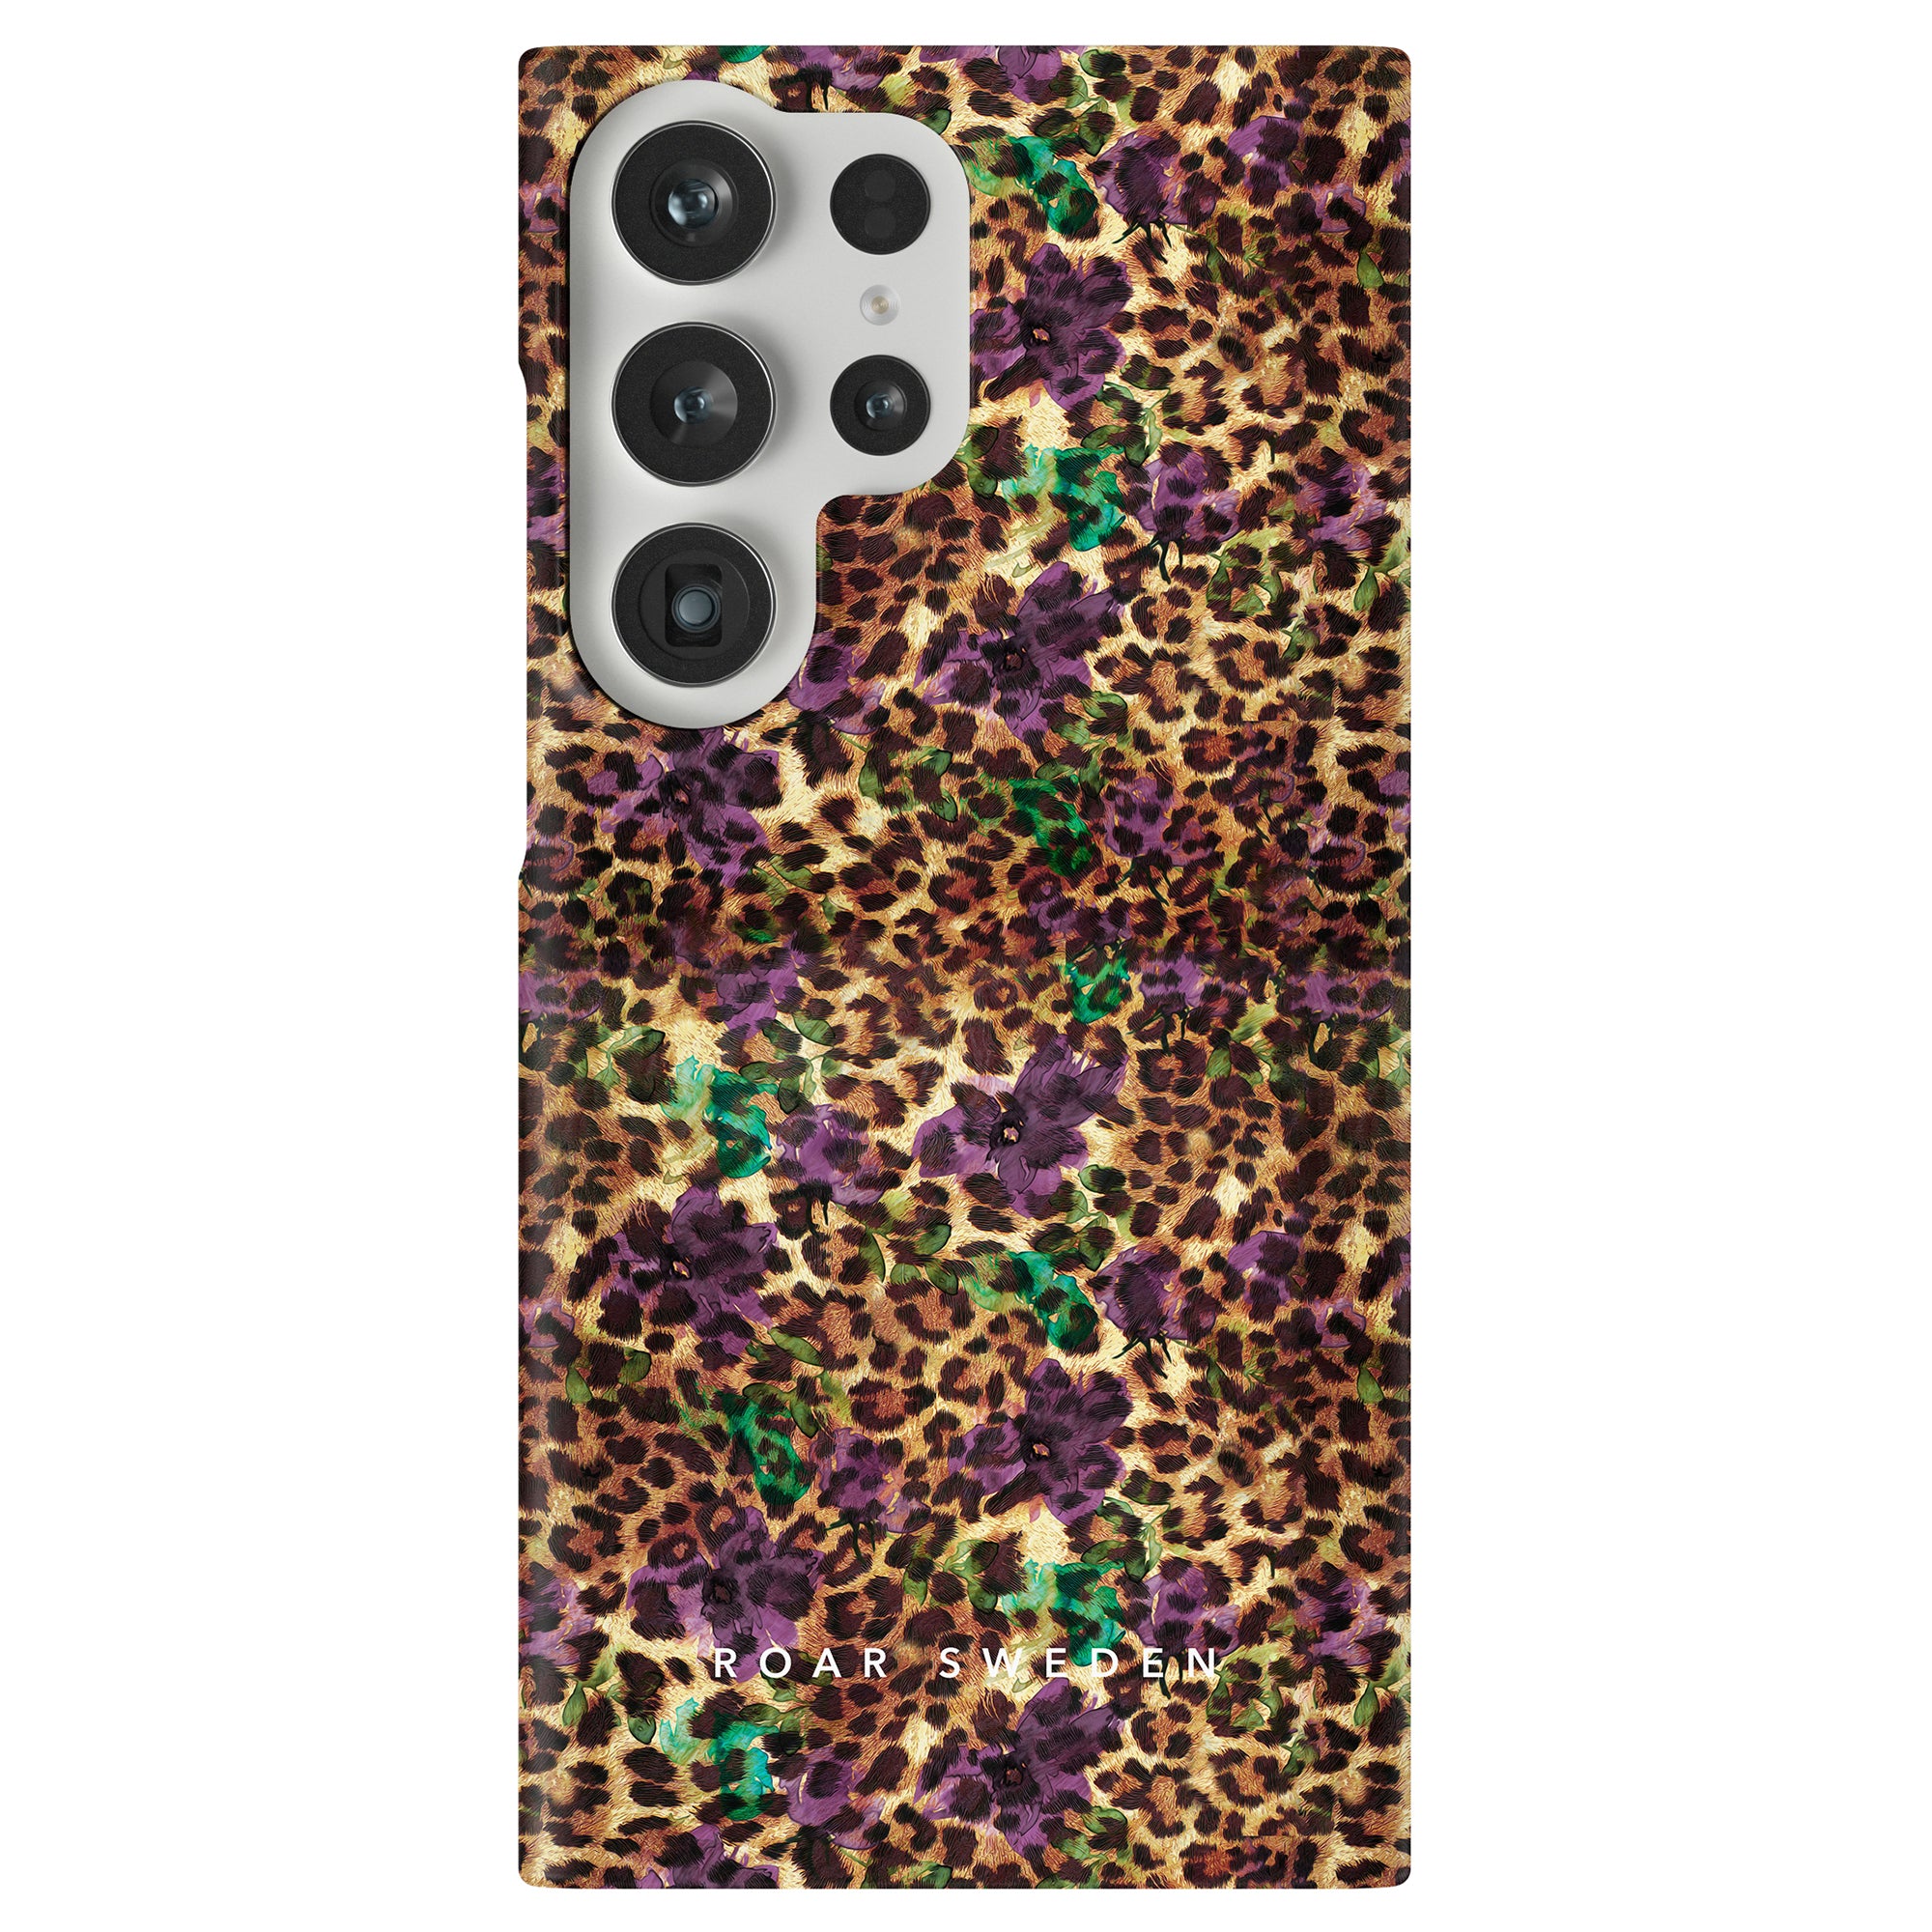 Ett livfullt och iögonfallande Flower Leopard - Tunt fodral designat speciellt för Samsung Galaxy S11. Denna SEO-optimerade produktbeskrivning visar upp den fantastiska kombinationen av lila och grönt, vilket säkerställer att din Samsung Galaxy S